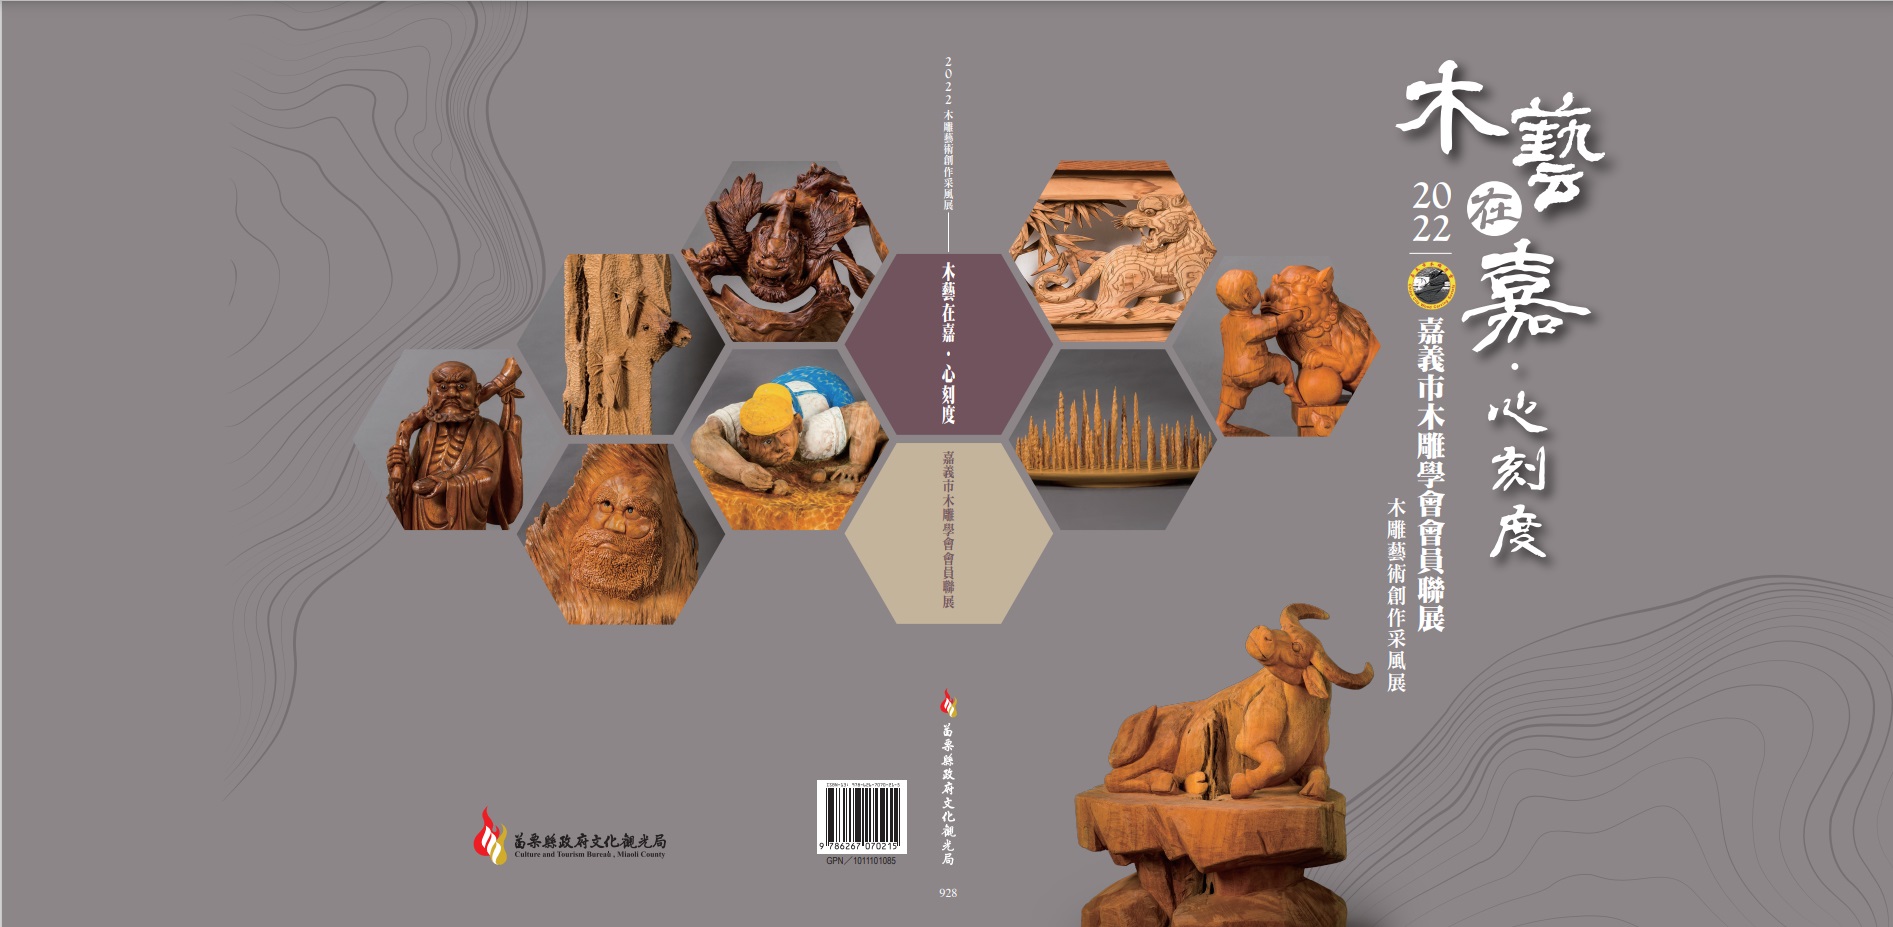 2022木雕藝術創作采風展-木藝在嘉‧心刻度 嘉義市木雕學會會員聯展